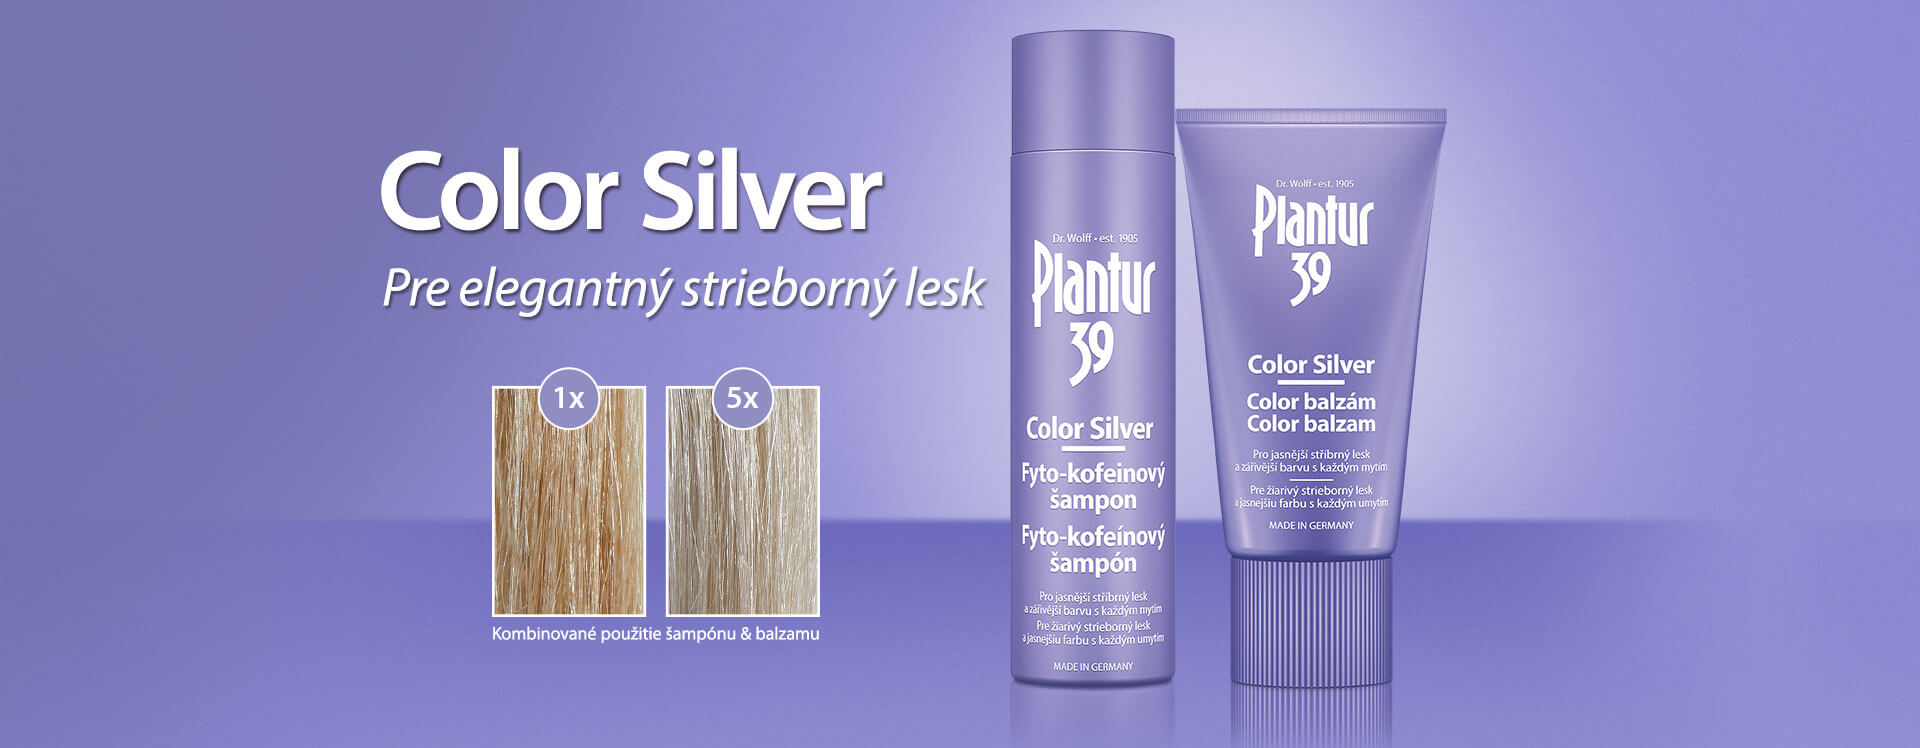 Plantur 39 Color Silver - Pre elegantný strieborný lesk